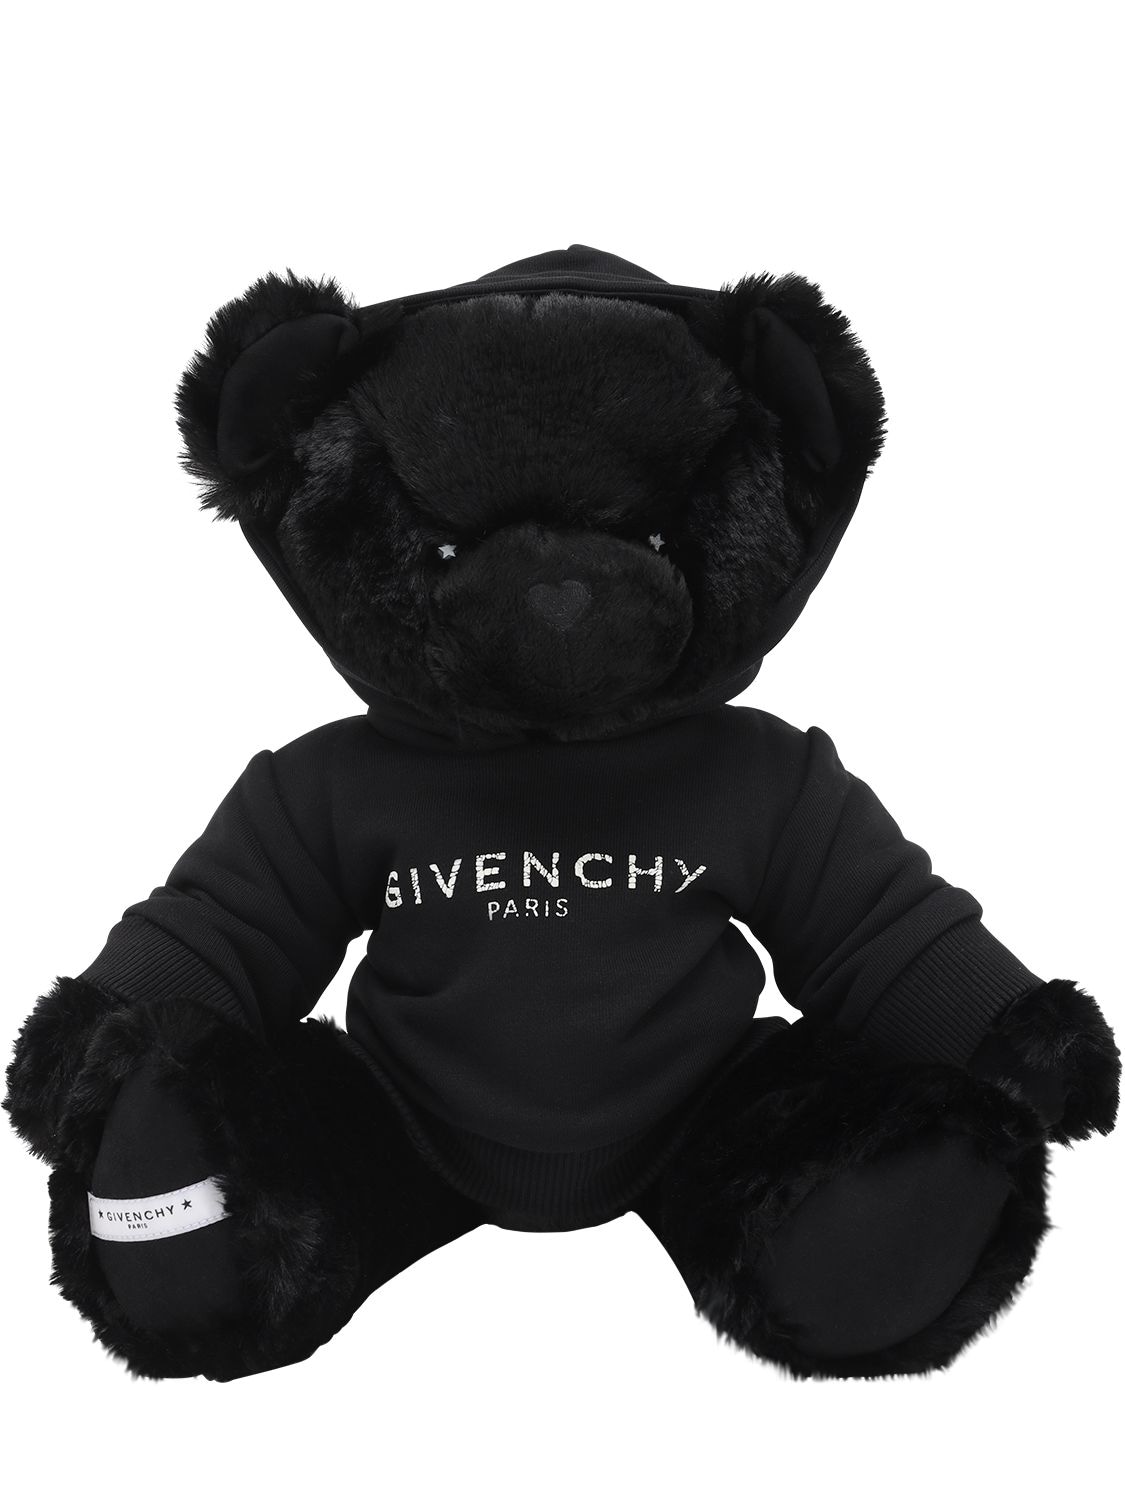 Givenchy Kids' Plush Teddy Bear W/ Logo Sweatshirt In Black